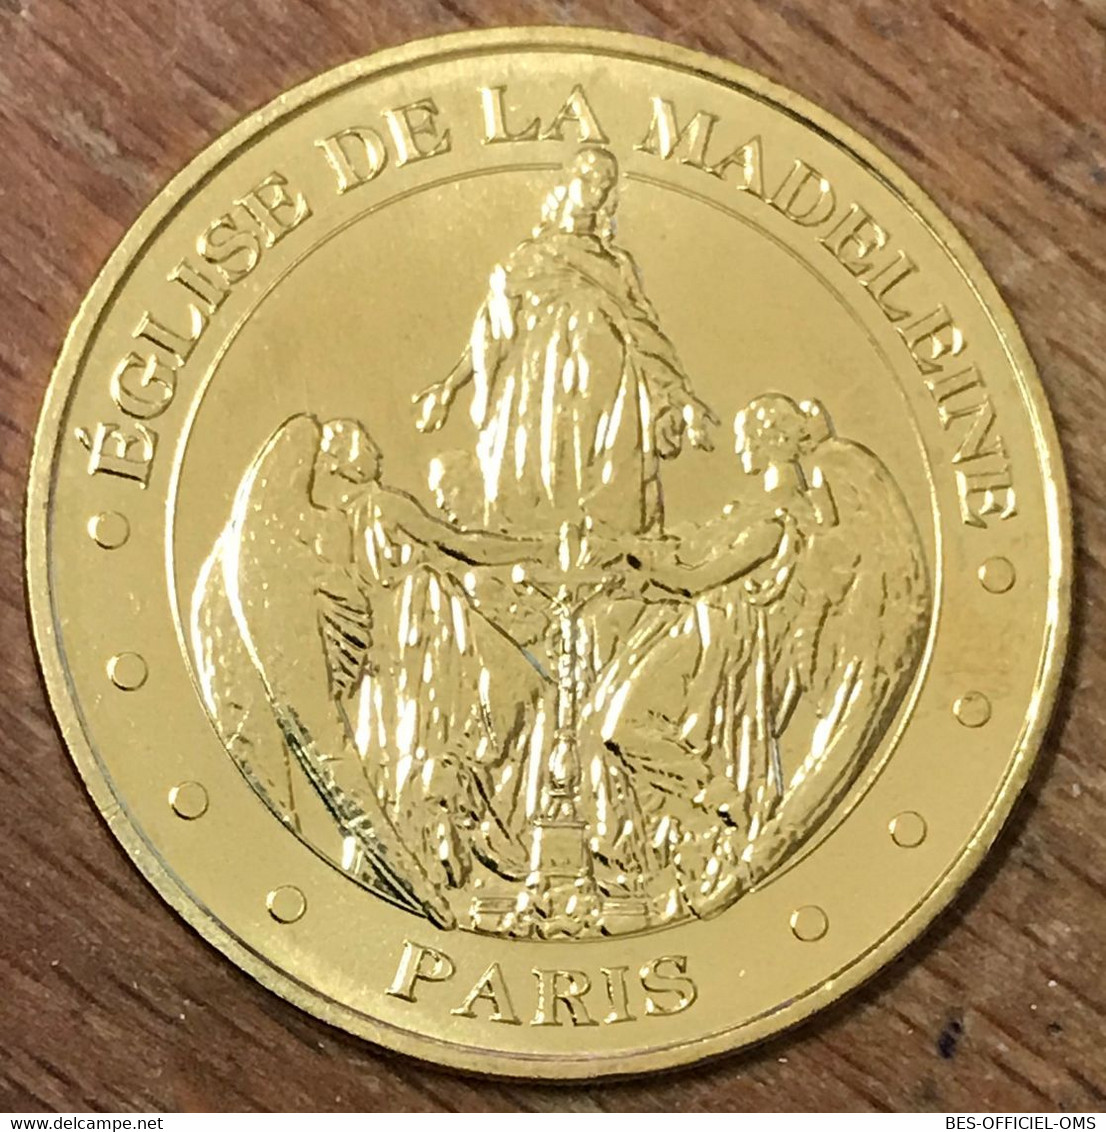 75008 PARIS ÉGLISE DE LA MADELEINE MDP 2019 MEDAILLE SOUVENIR MONNAIE DE PARIS JETON TOURISTIQUE MEDALS COINS TOKENS - 2019